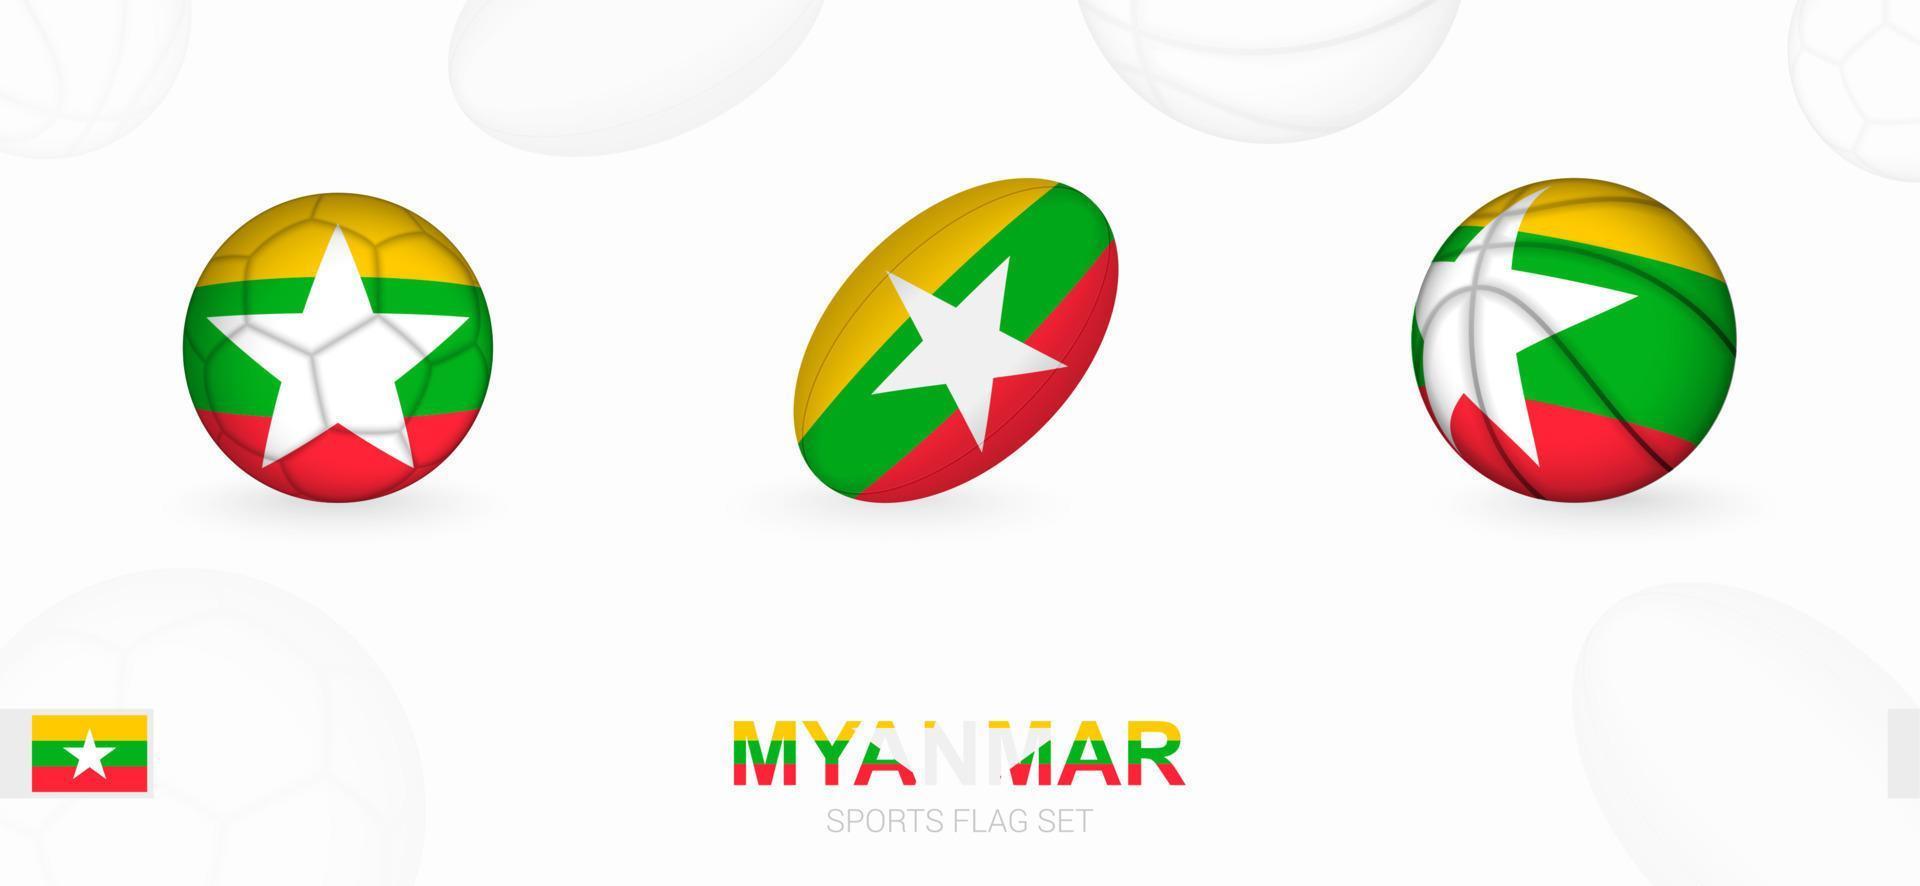 sport- pictogrammen voor Amerikaans voetbal, rugby en basketbal met de vlag van myanmar. vector